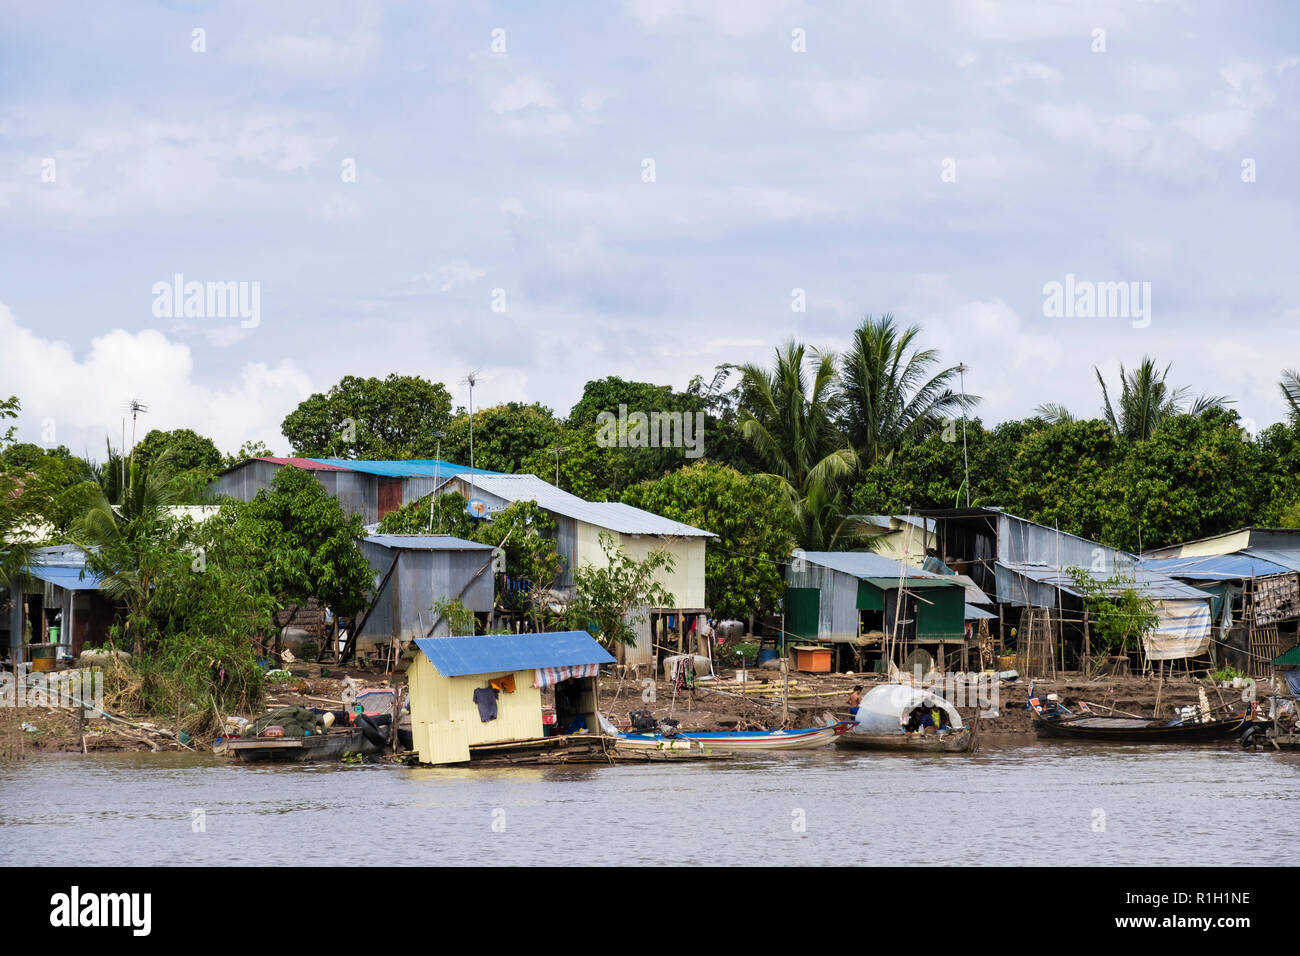 Stagno tipico baracche di case su palafitte nel villaggio di pescatori lungo il fiume Mekong. Cambogia, sud-est asiatico Foto Stock